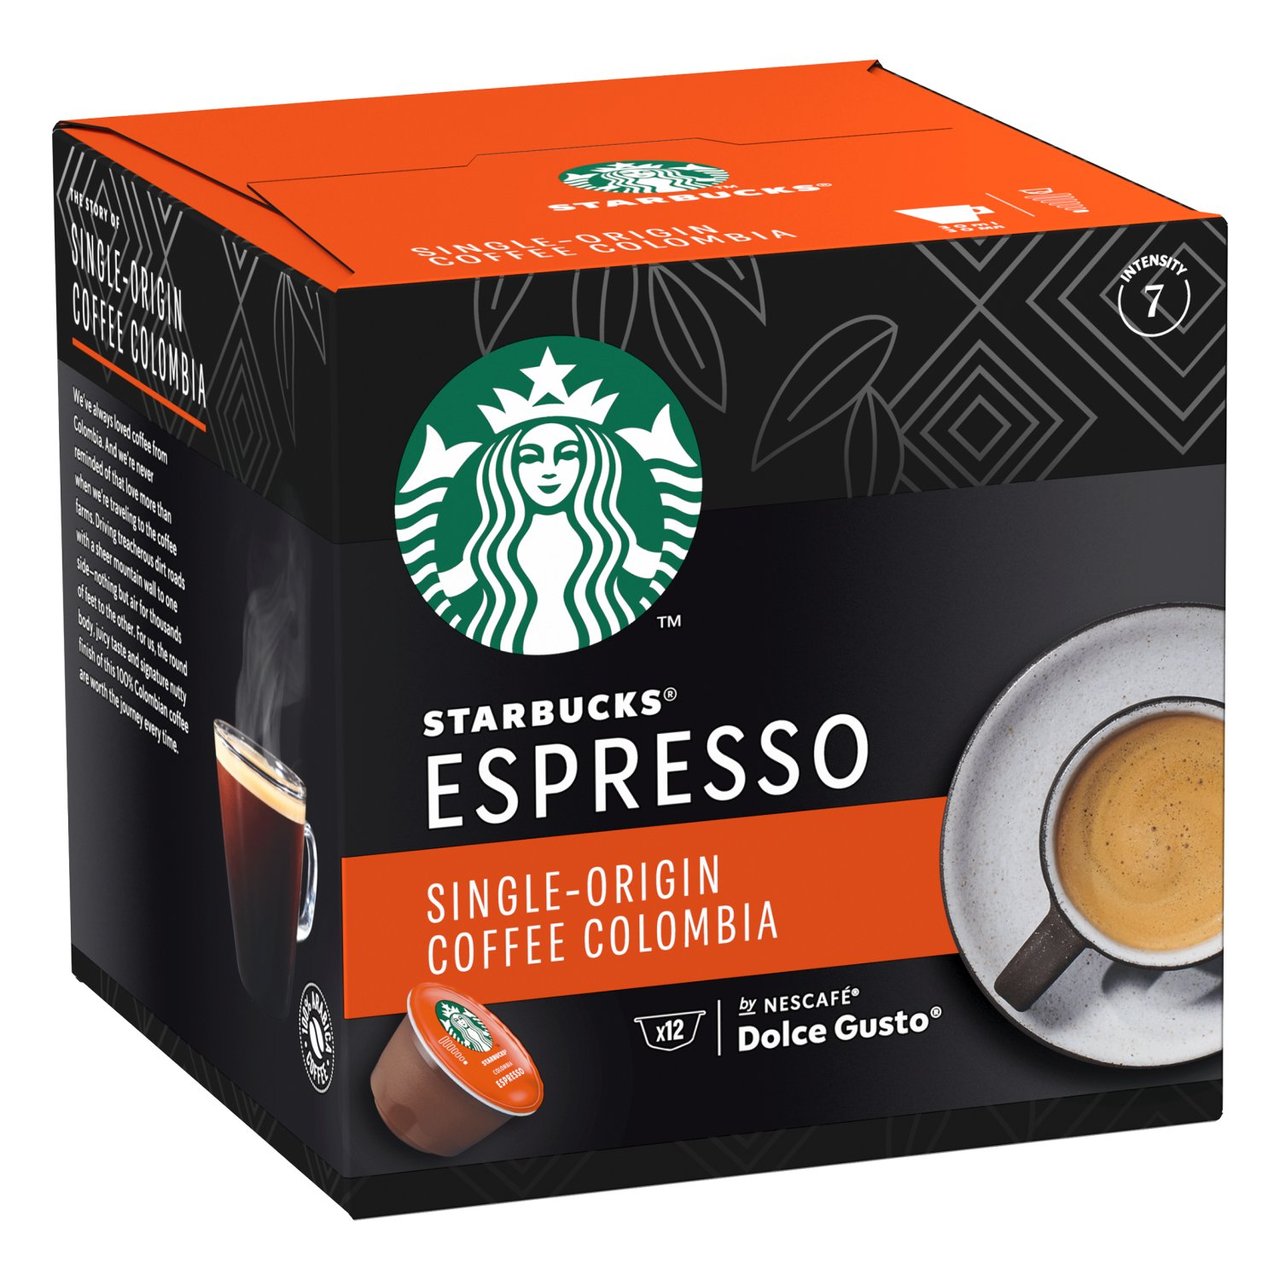 Старбакс Single-Origin Coffee Colombia. Starbucks Espresso Colombia. Сингл эспрессо. Dolce Espresso.